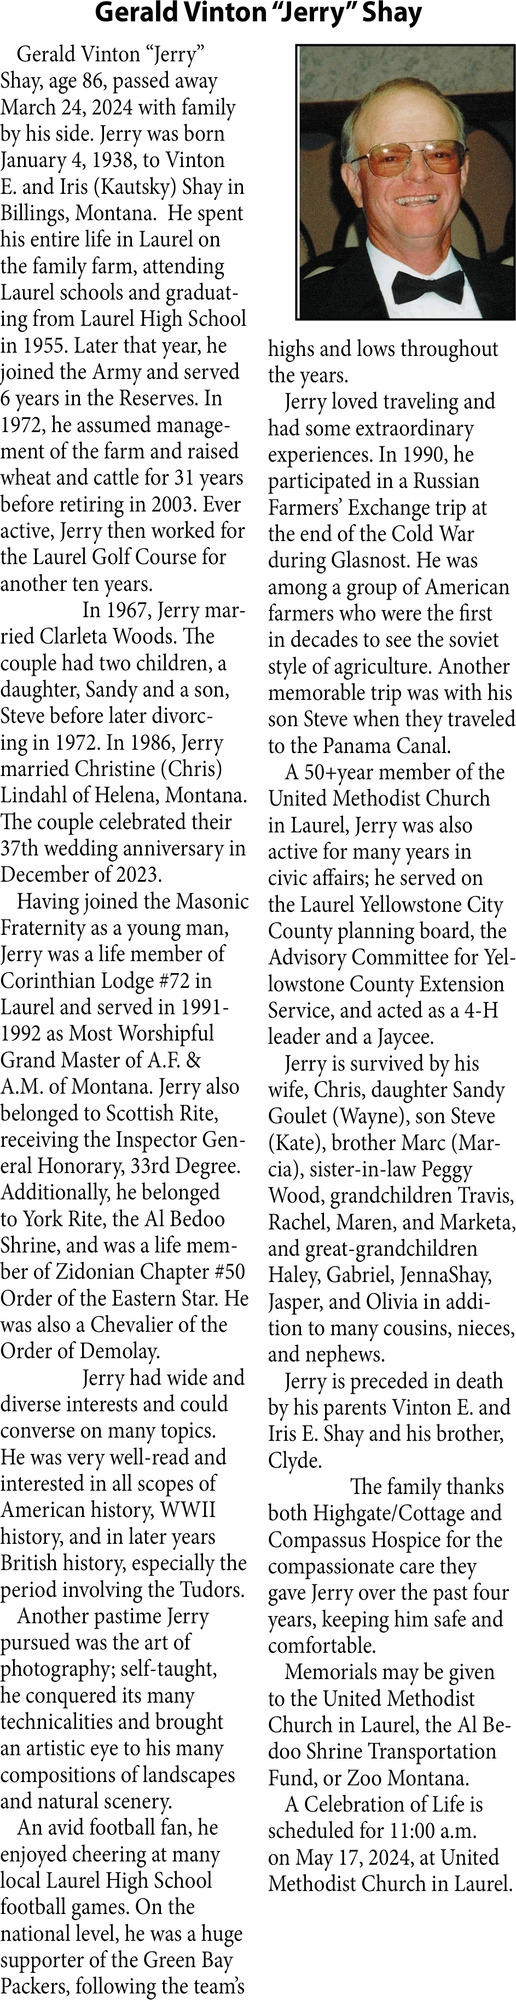 Gerald Vinton "Jerry" Shay, Obituaries, Glendive, MT